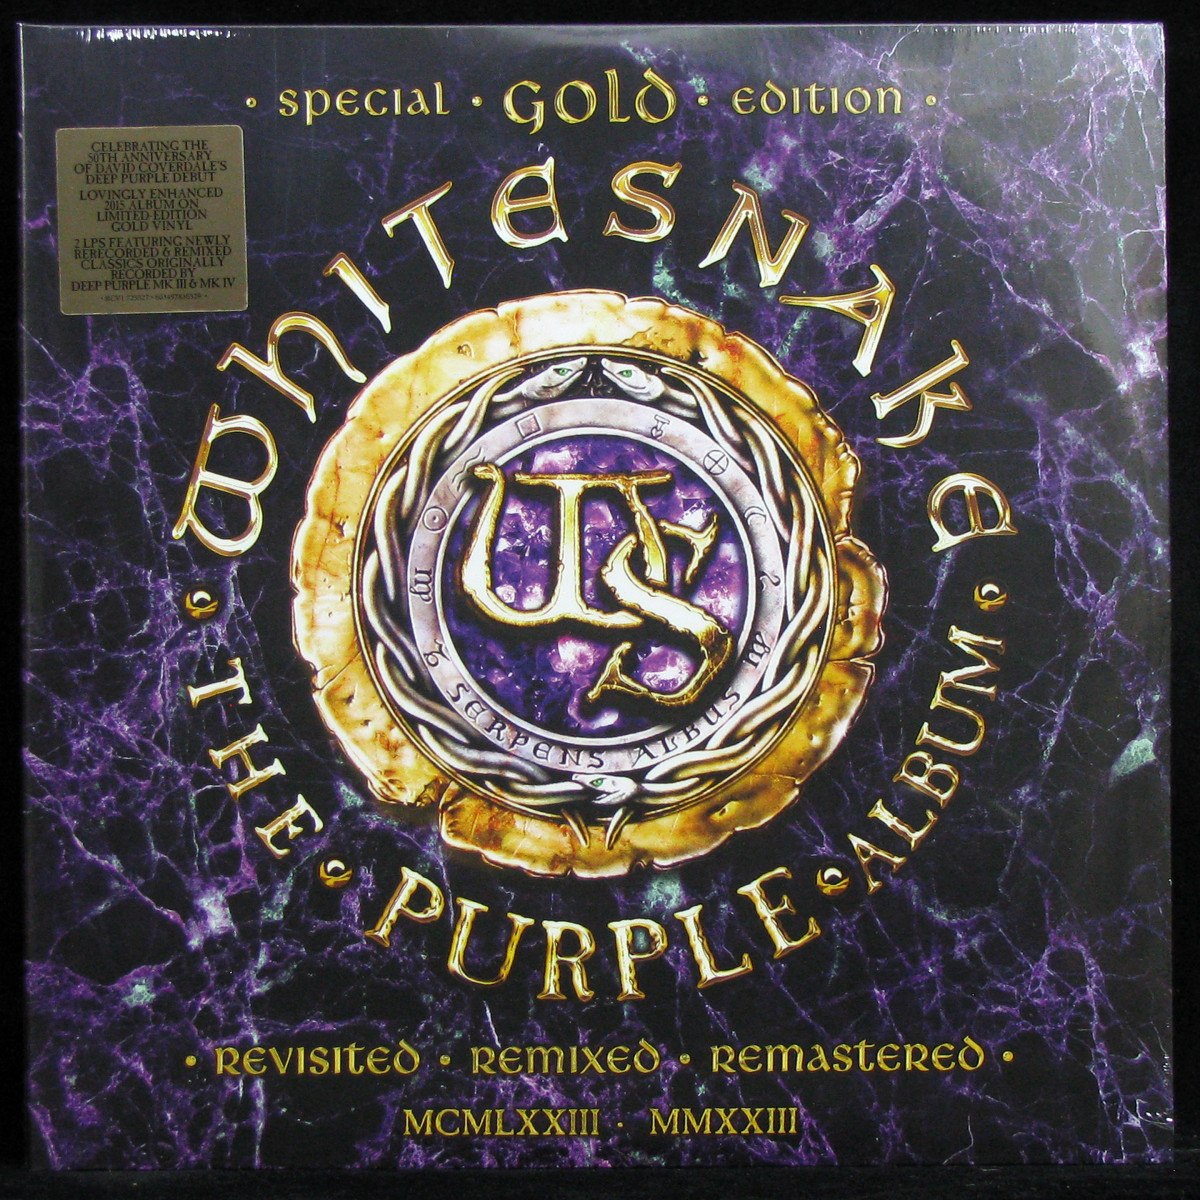 Purple Album